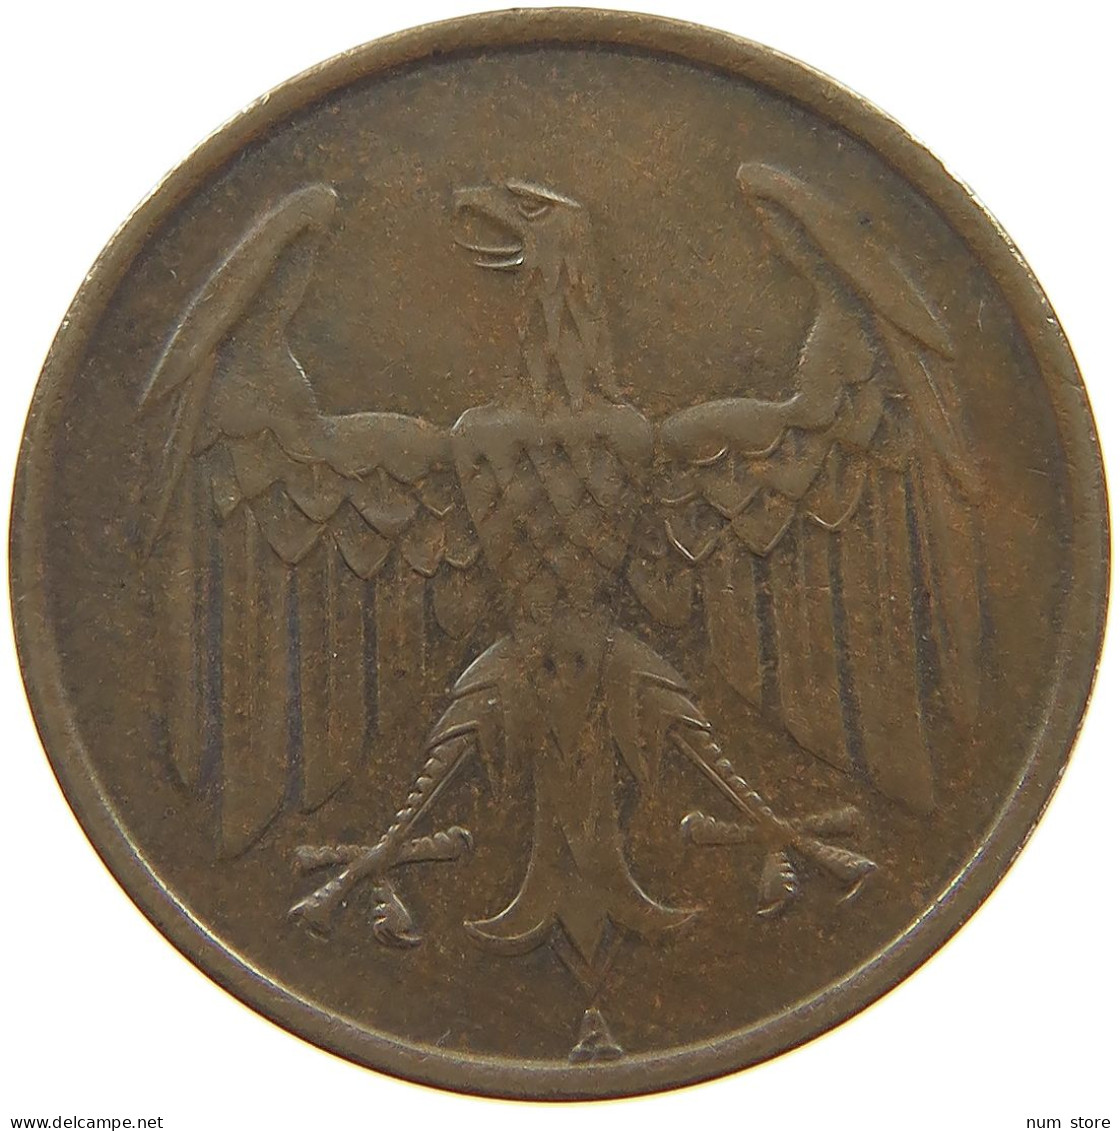 WEIMARER REPUBLIK 4 PFENNIG 1932 A  #c080 0481 - 4 Reichspfennig